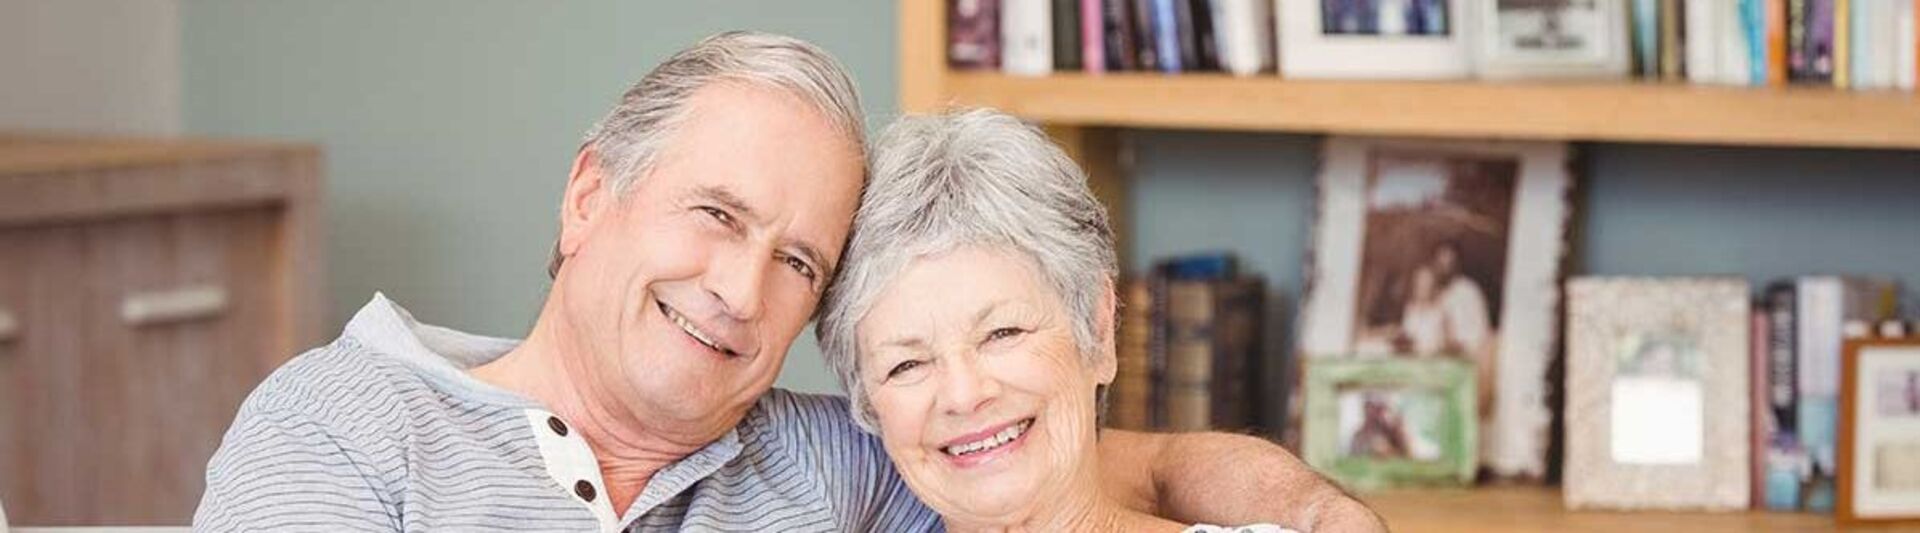 Leben im Alter: Glückliches Seniorenpaar